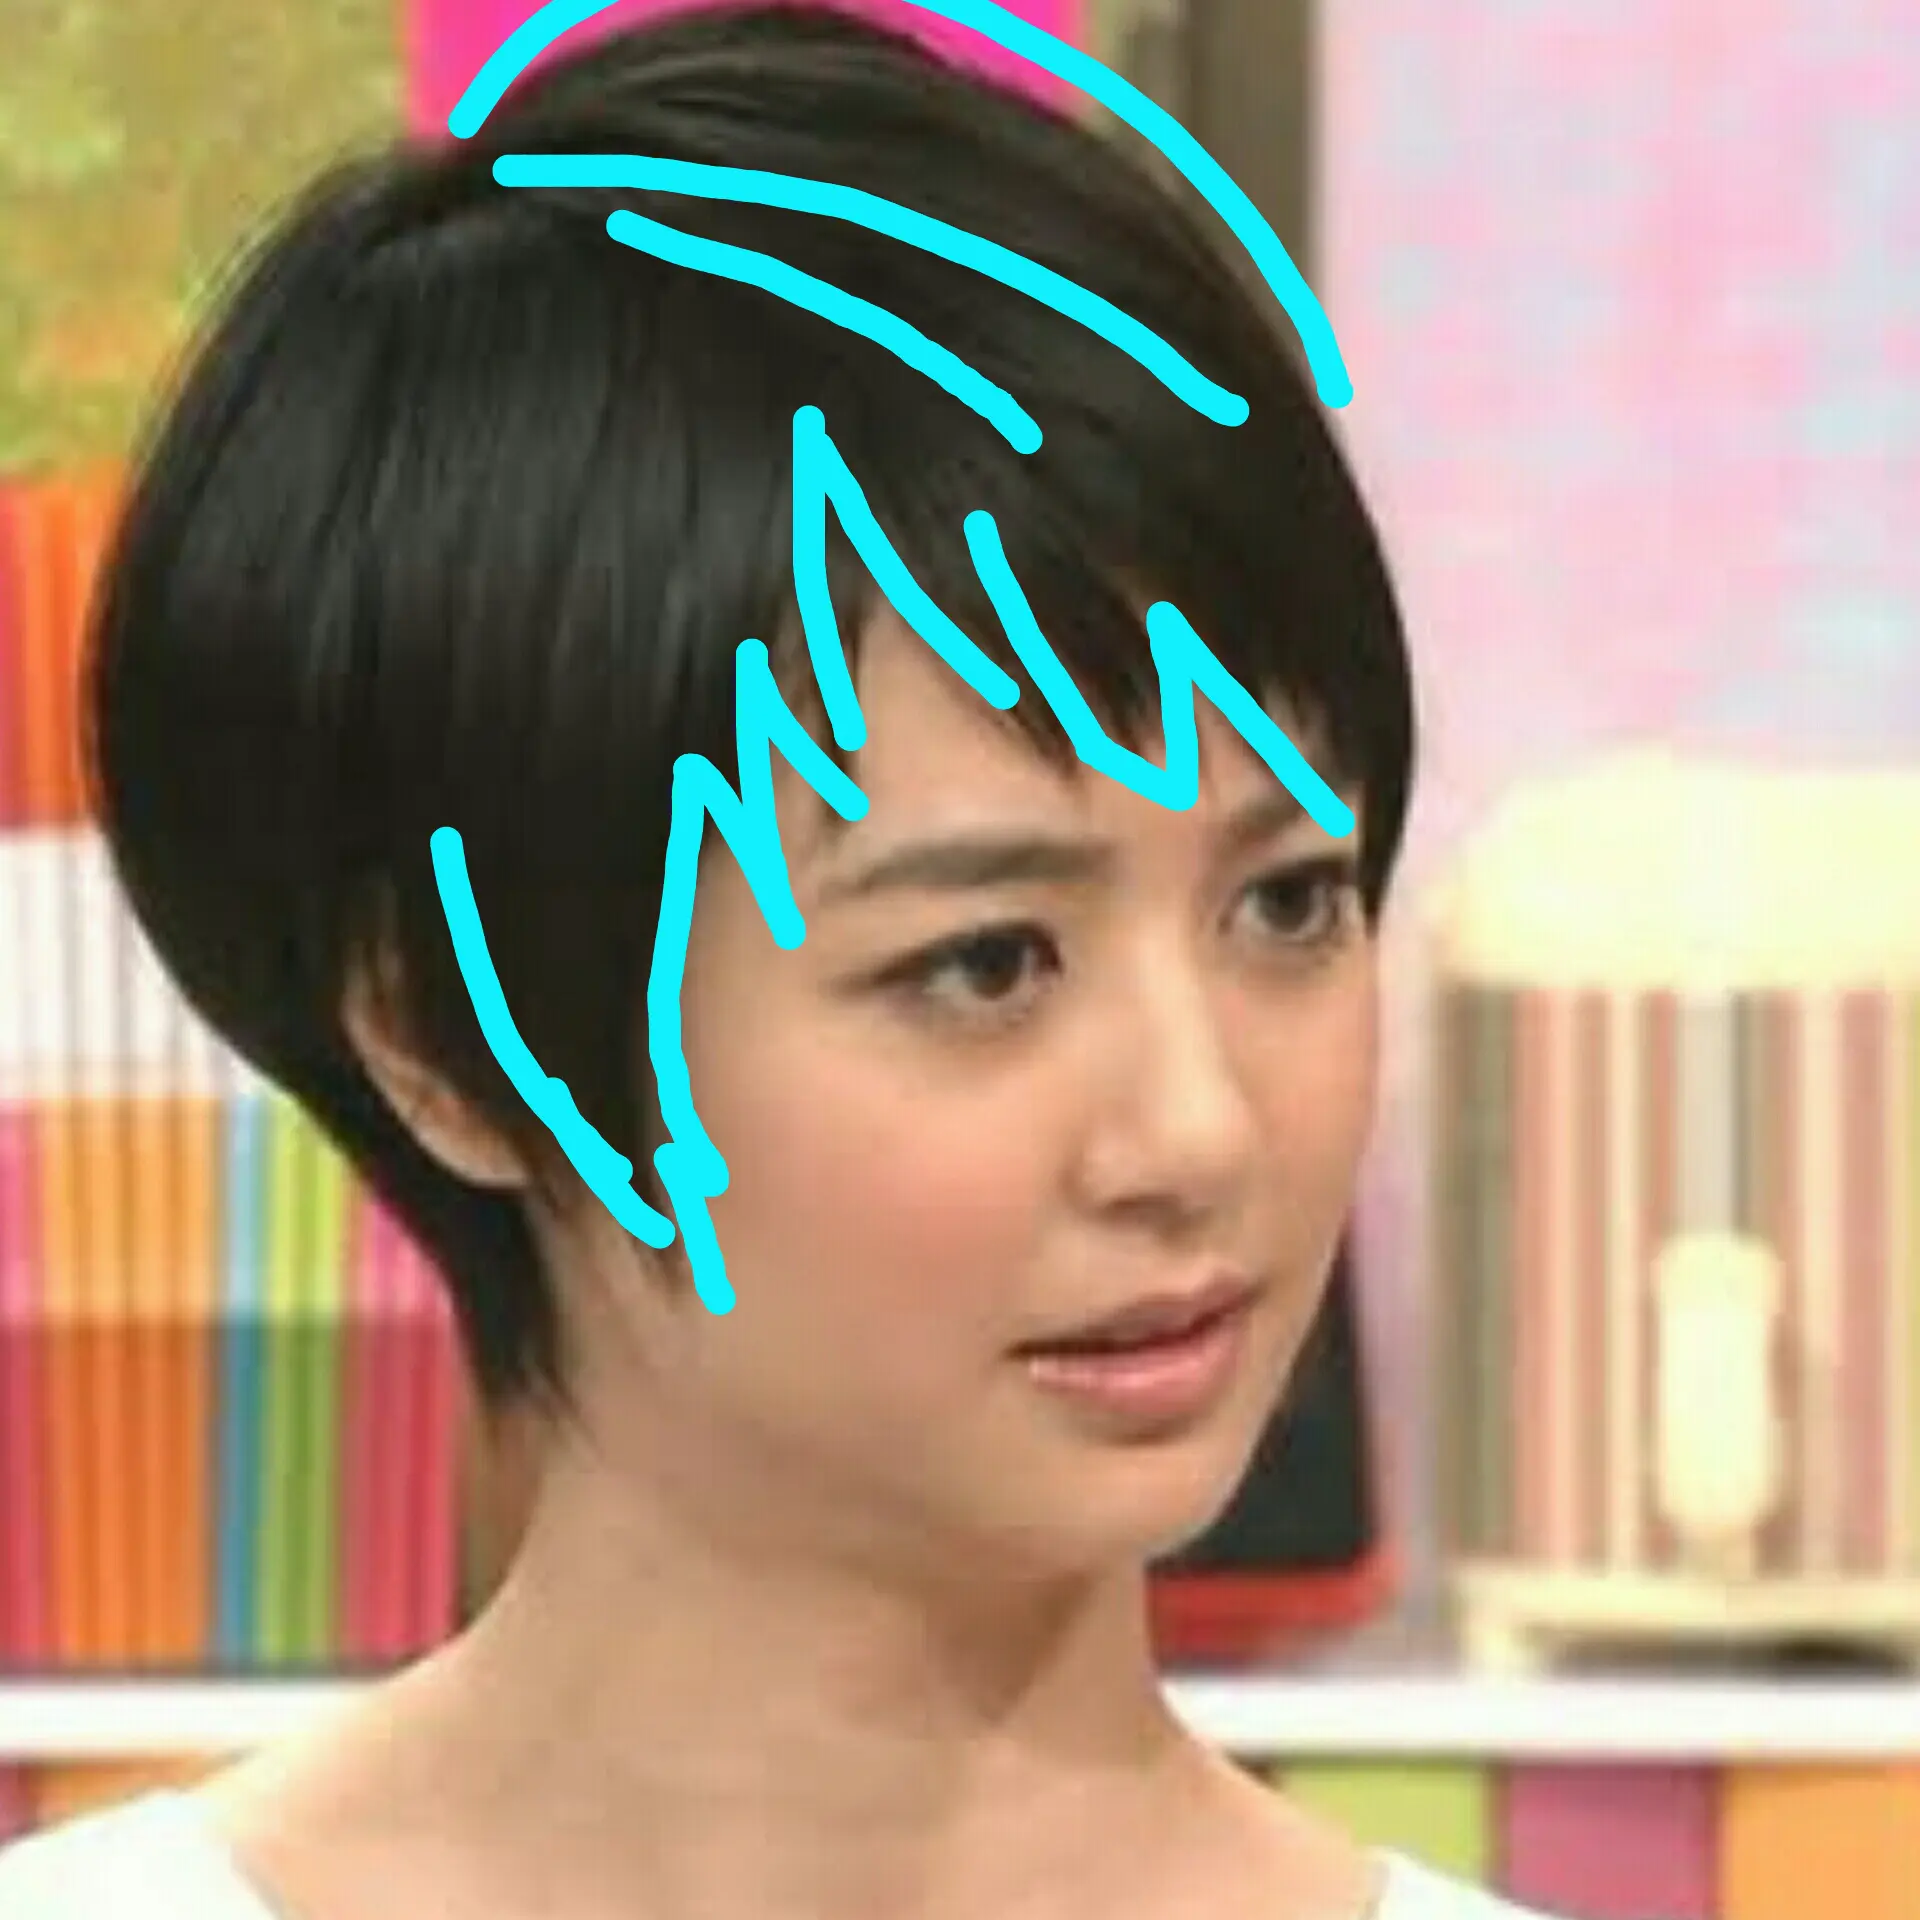 アナウンサー夏目三久さんの髪型最新のショートヘアについて